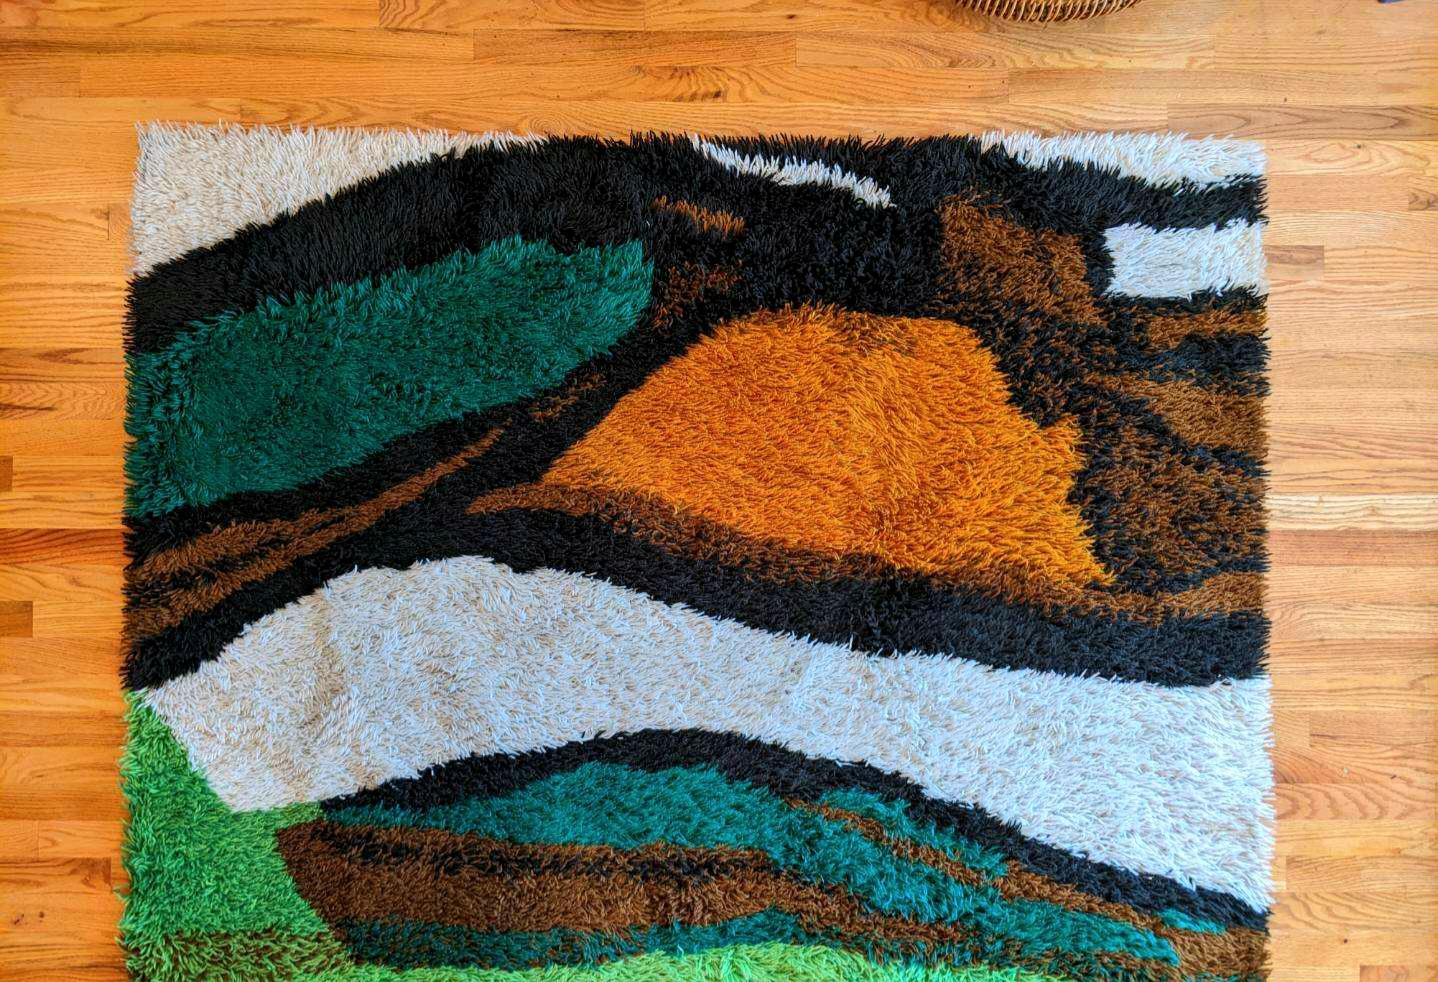 RYA-Teppich aus den 1960er Jahren, hergestellt in Dänemark. Dieser Teppich enthält schöne Erdtöne, die ich noch nie in einem RYA-Teppich gesehen habe.